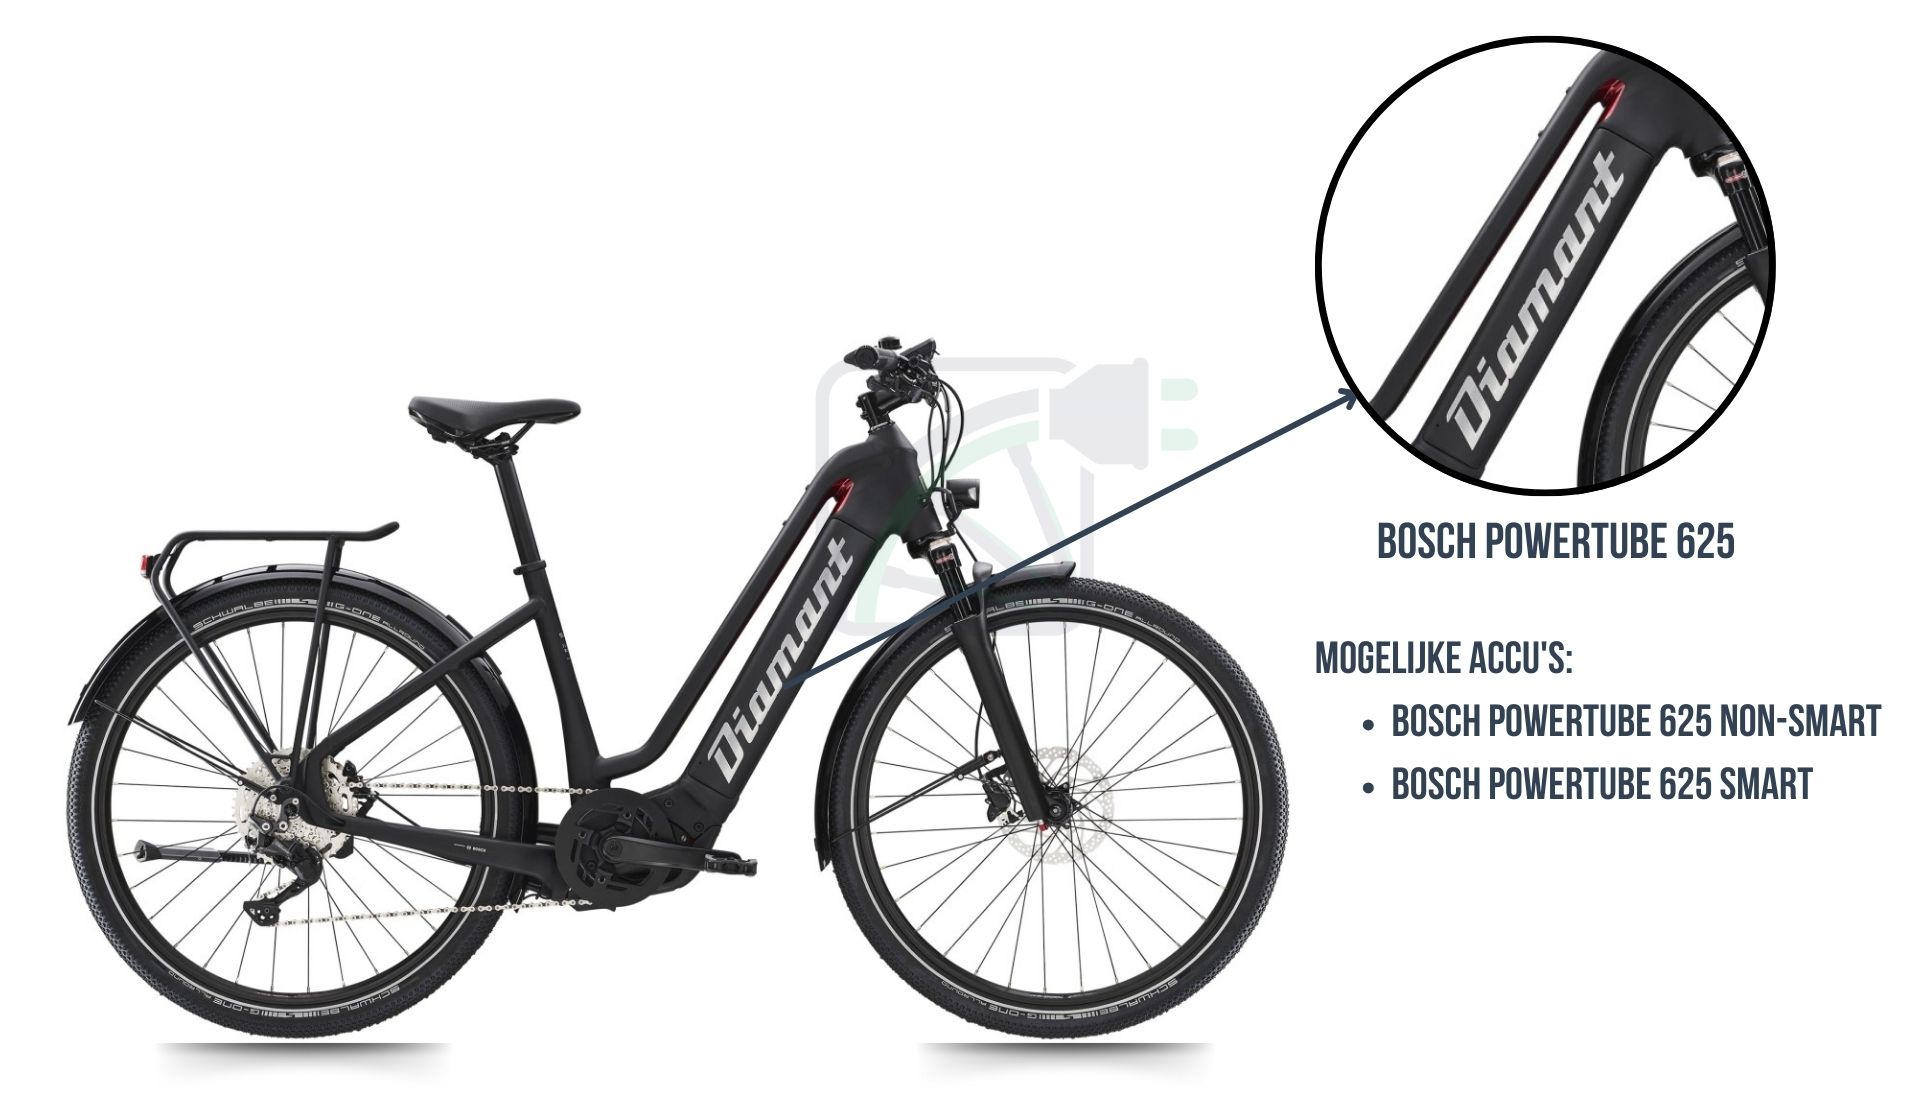 De Diamant Zouma elektrische fiets met daarbij uitgelicht welke fietsaccu er bij deze fiets hoort. Dit is namelijk de Bosch Powertube 625 SMART of de Bosch Powertube 625 non-SMART.